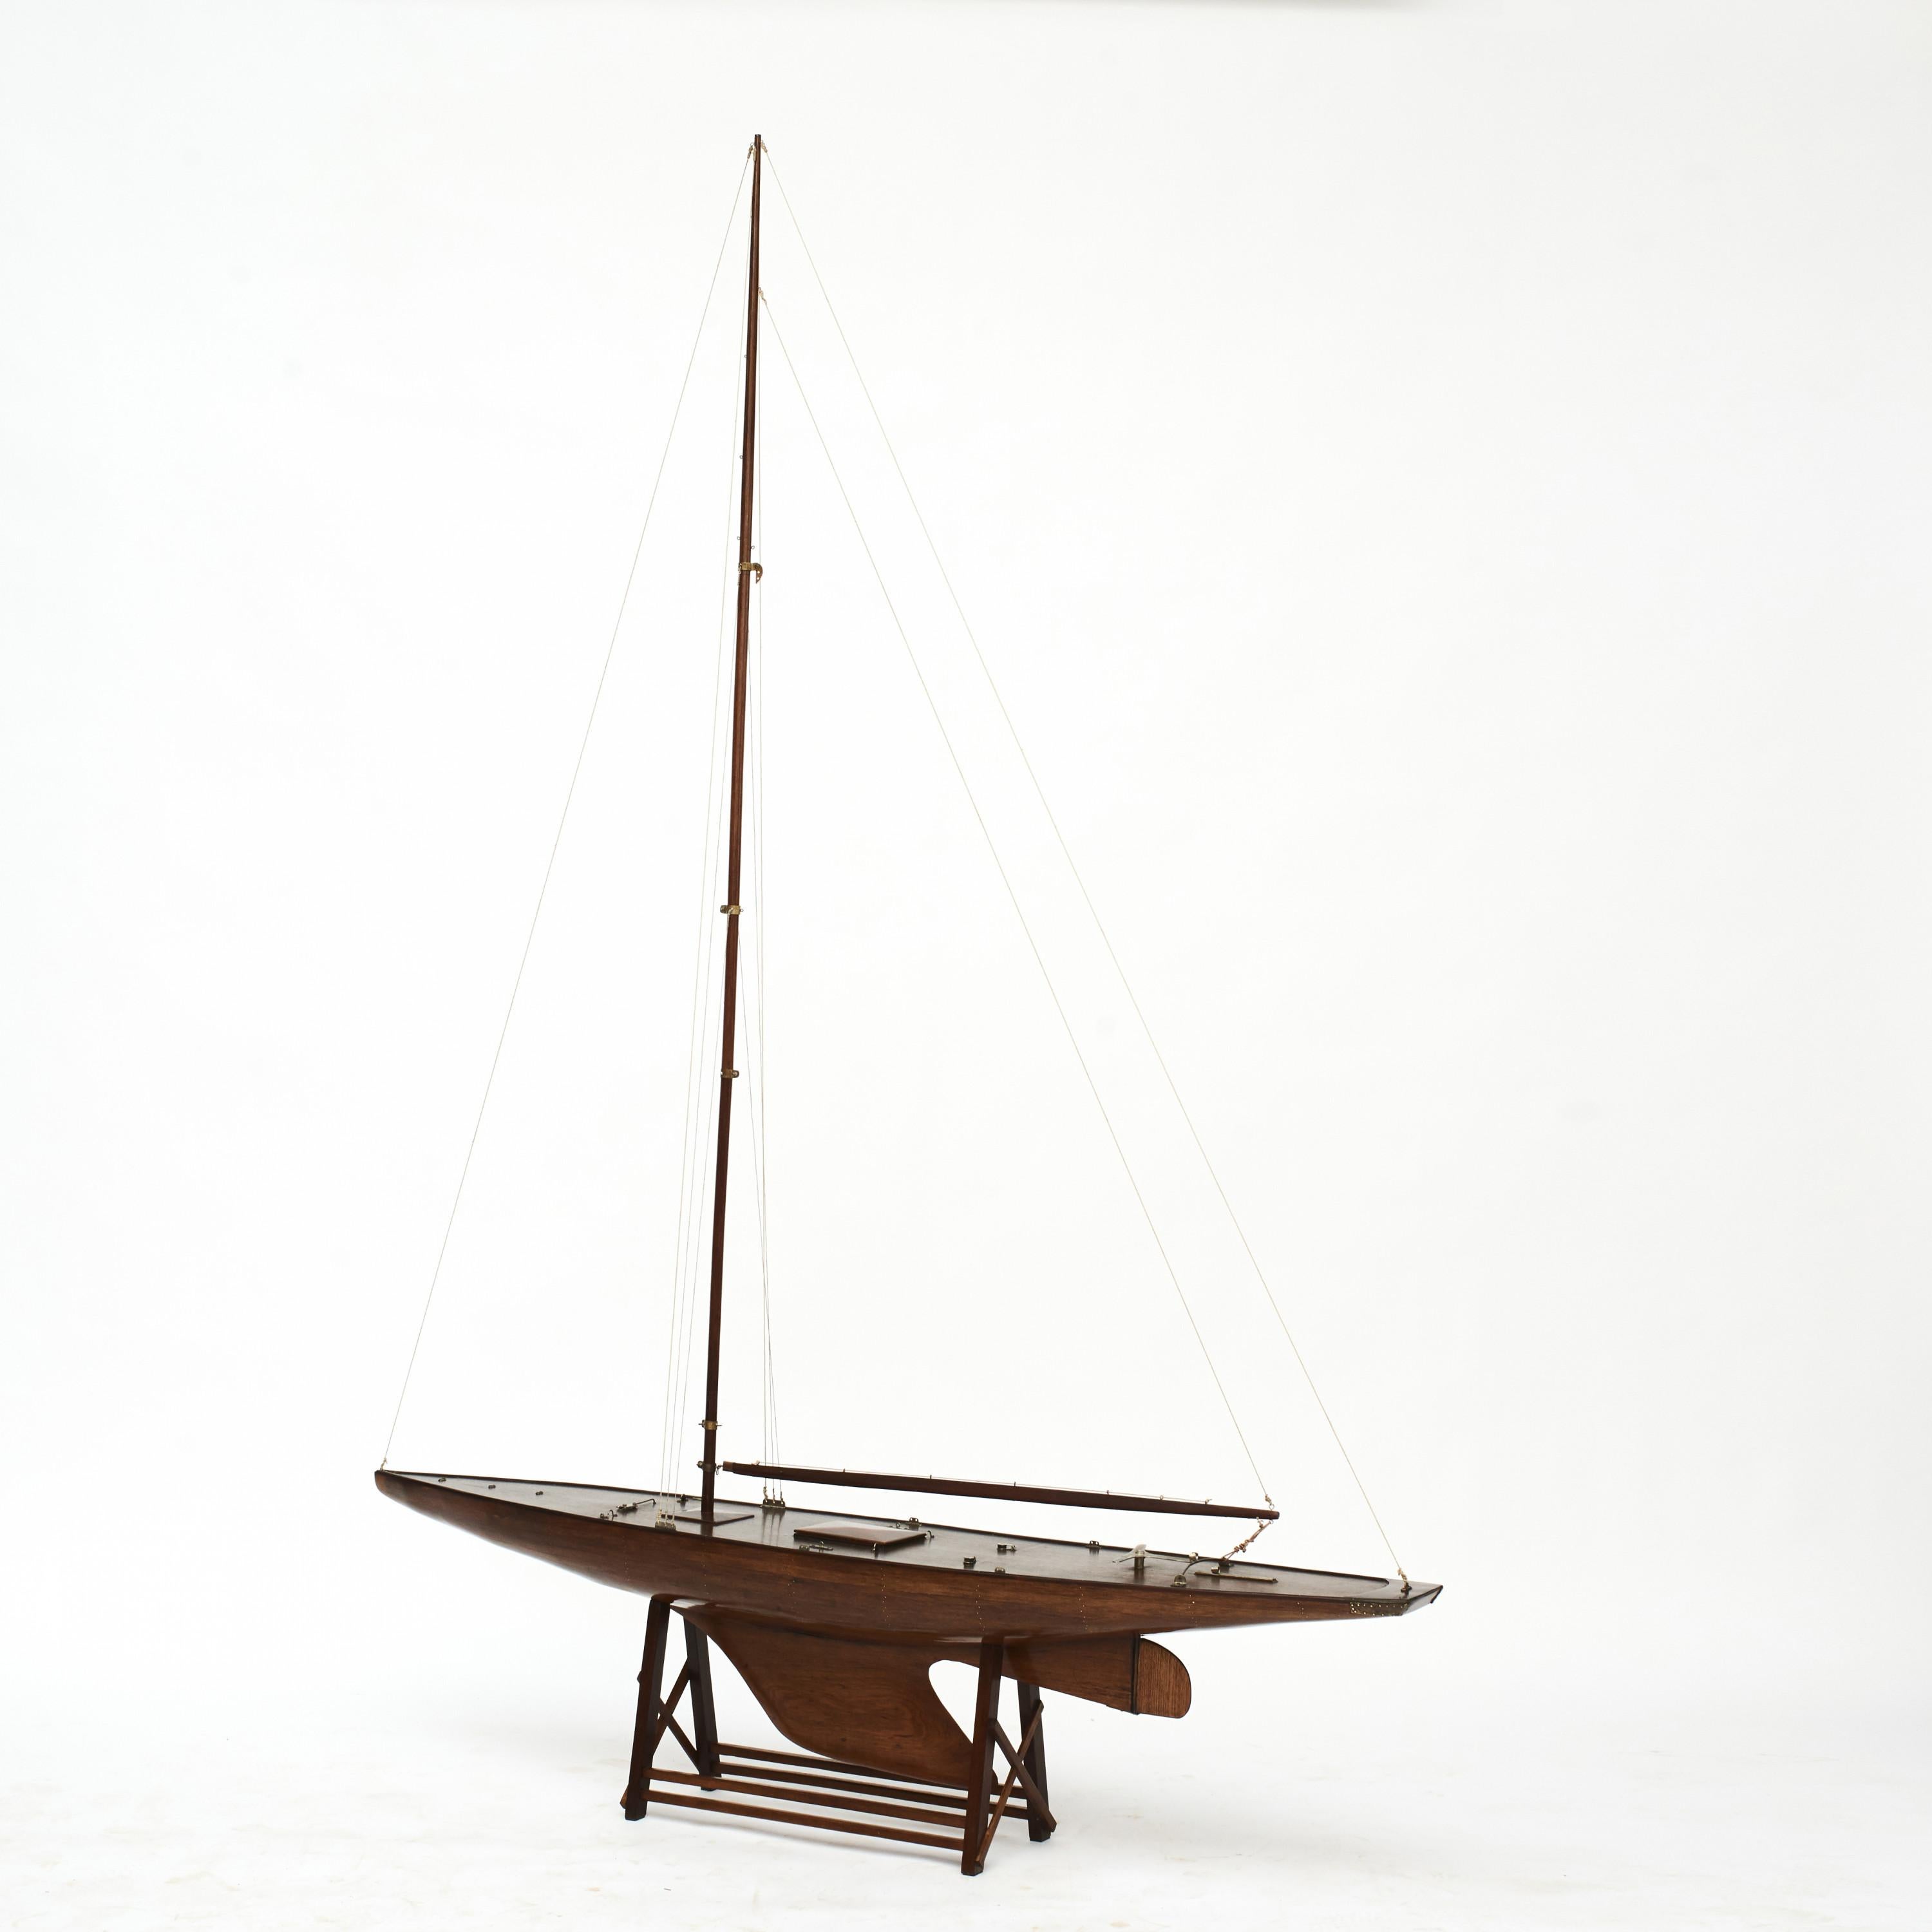 Ein sehr elegantes Schiffsmodell aus Holz für eine Teichjacht. Hohe Qualität, handgefertigt.
Rumpf und Mast aus Palisanderholz mit feinen Details.
Das Schiff steht auf einem speziell angefertigten Holzständer, um es aufrecht und stabil zu